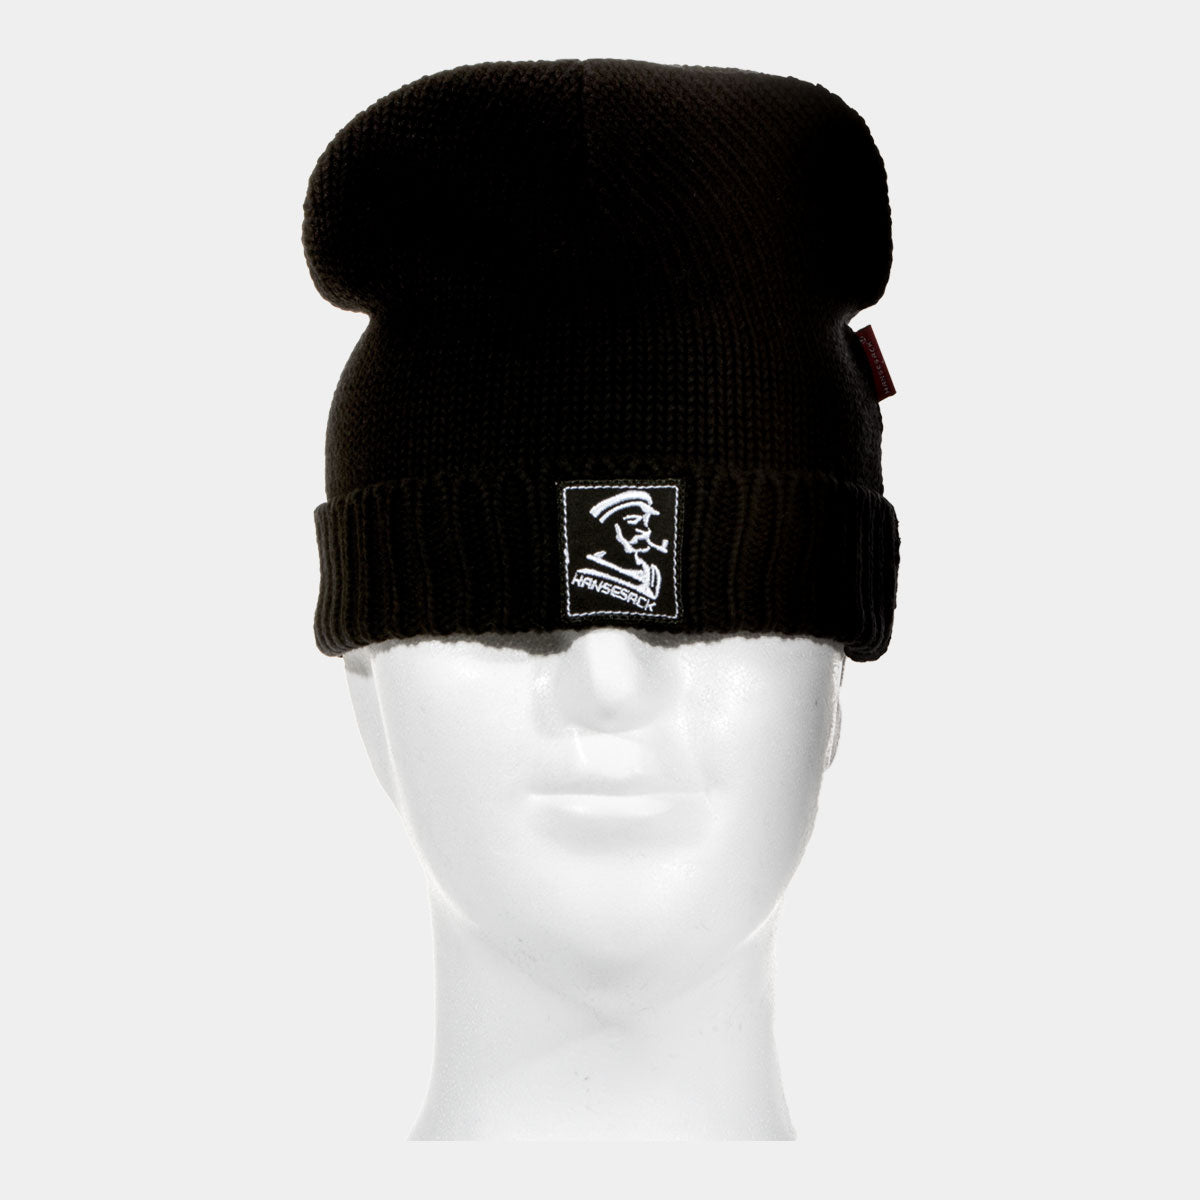 Hansesack Produktbild Strickmütze mit Hansesack Kopf Logo marine von vorne Aussteller Kopf